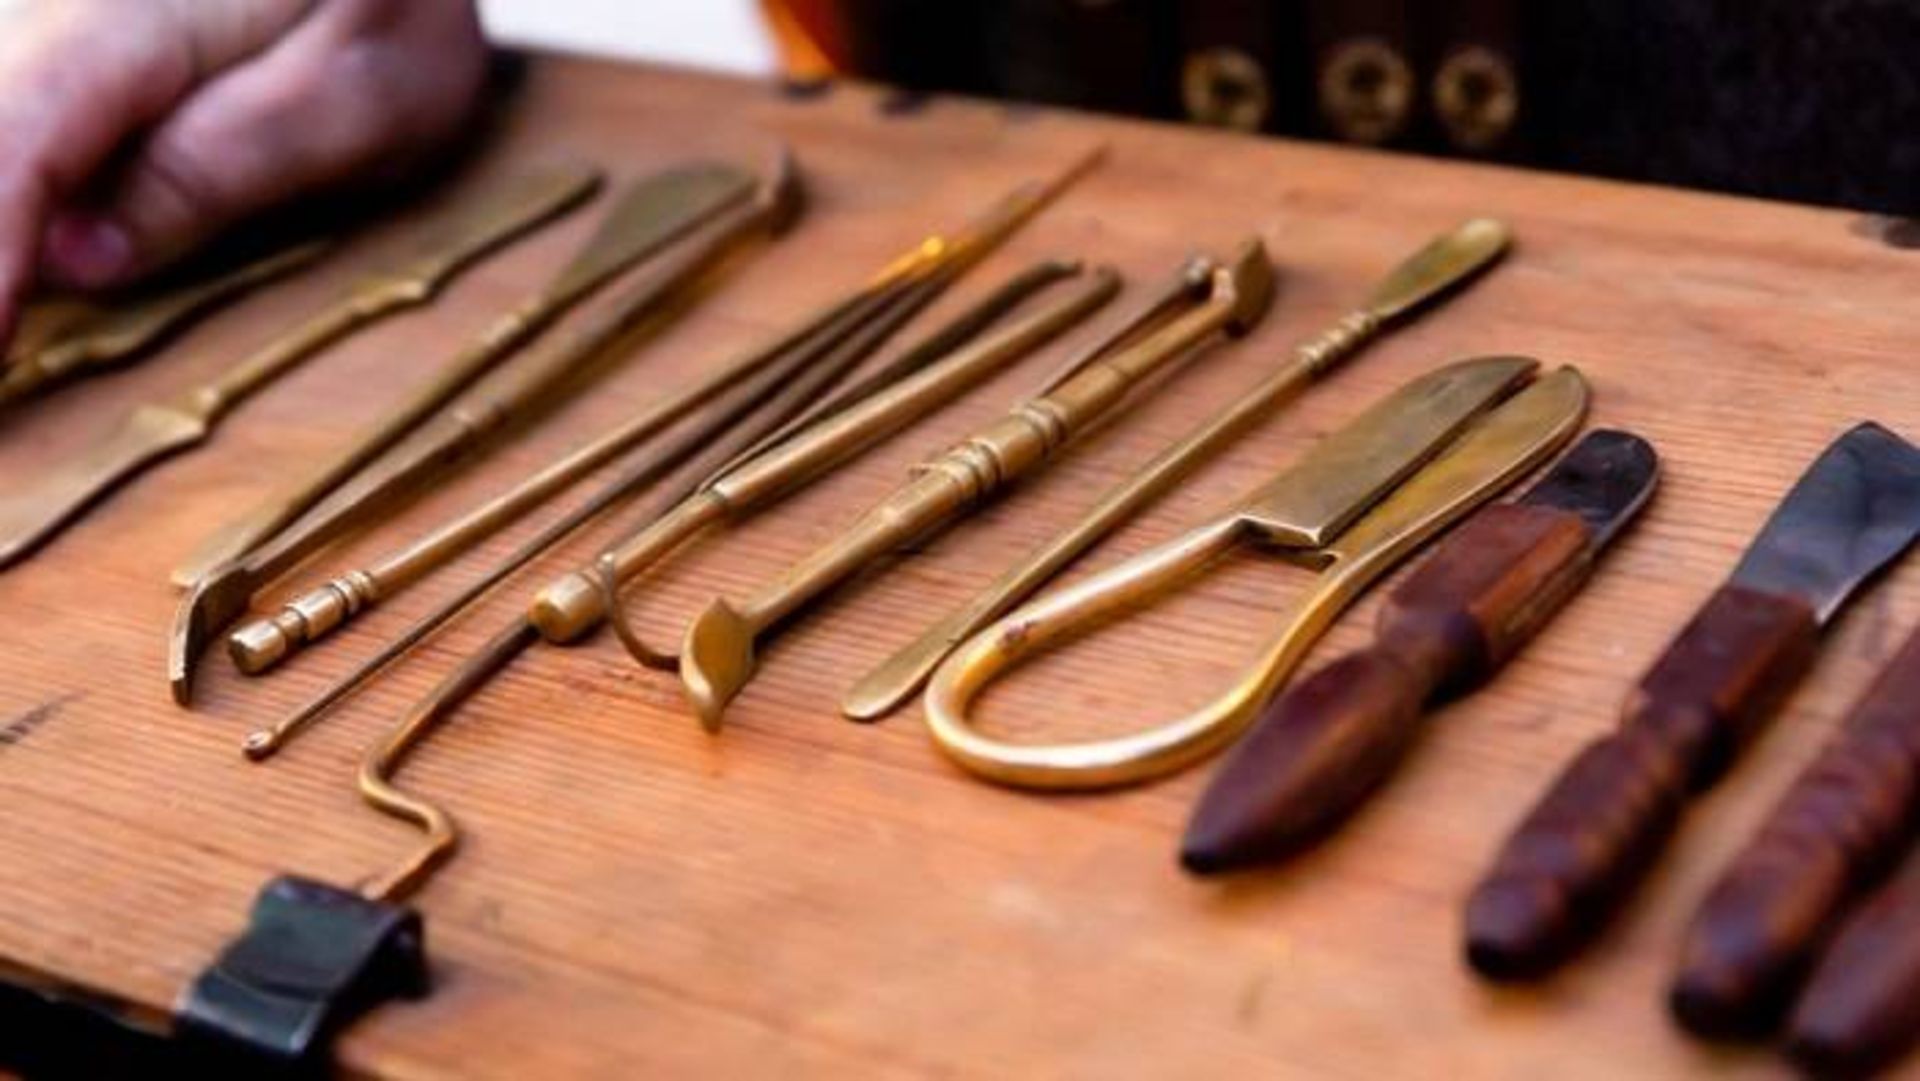 ابزار جراحی قرون وسطی / Medieval surgery tools